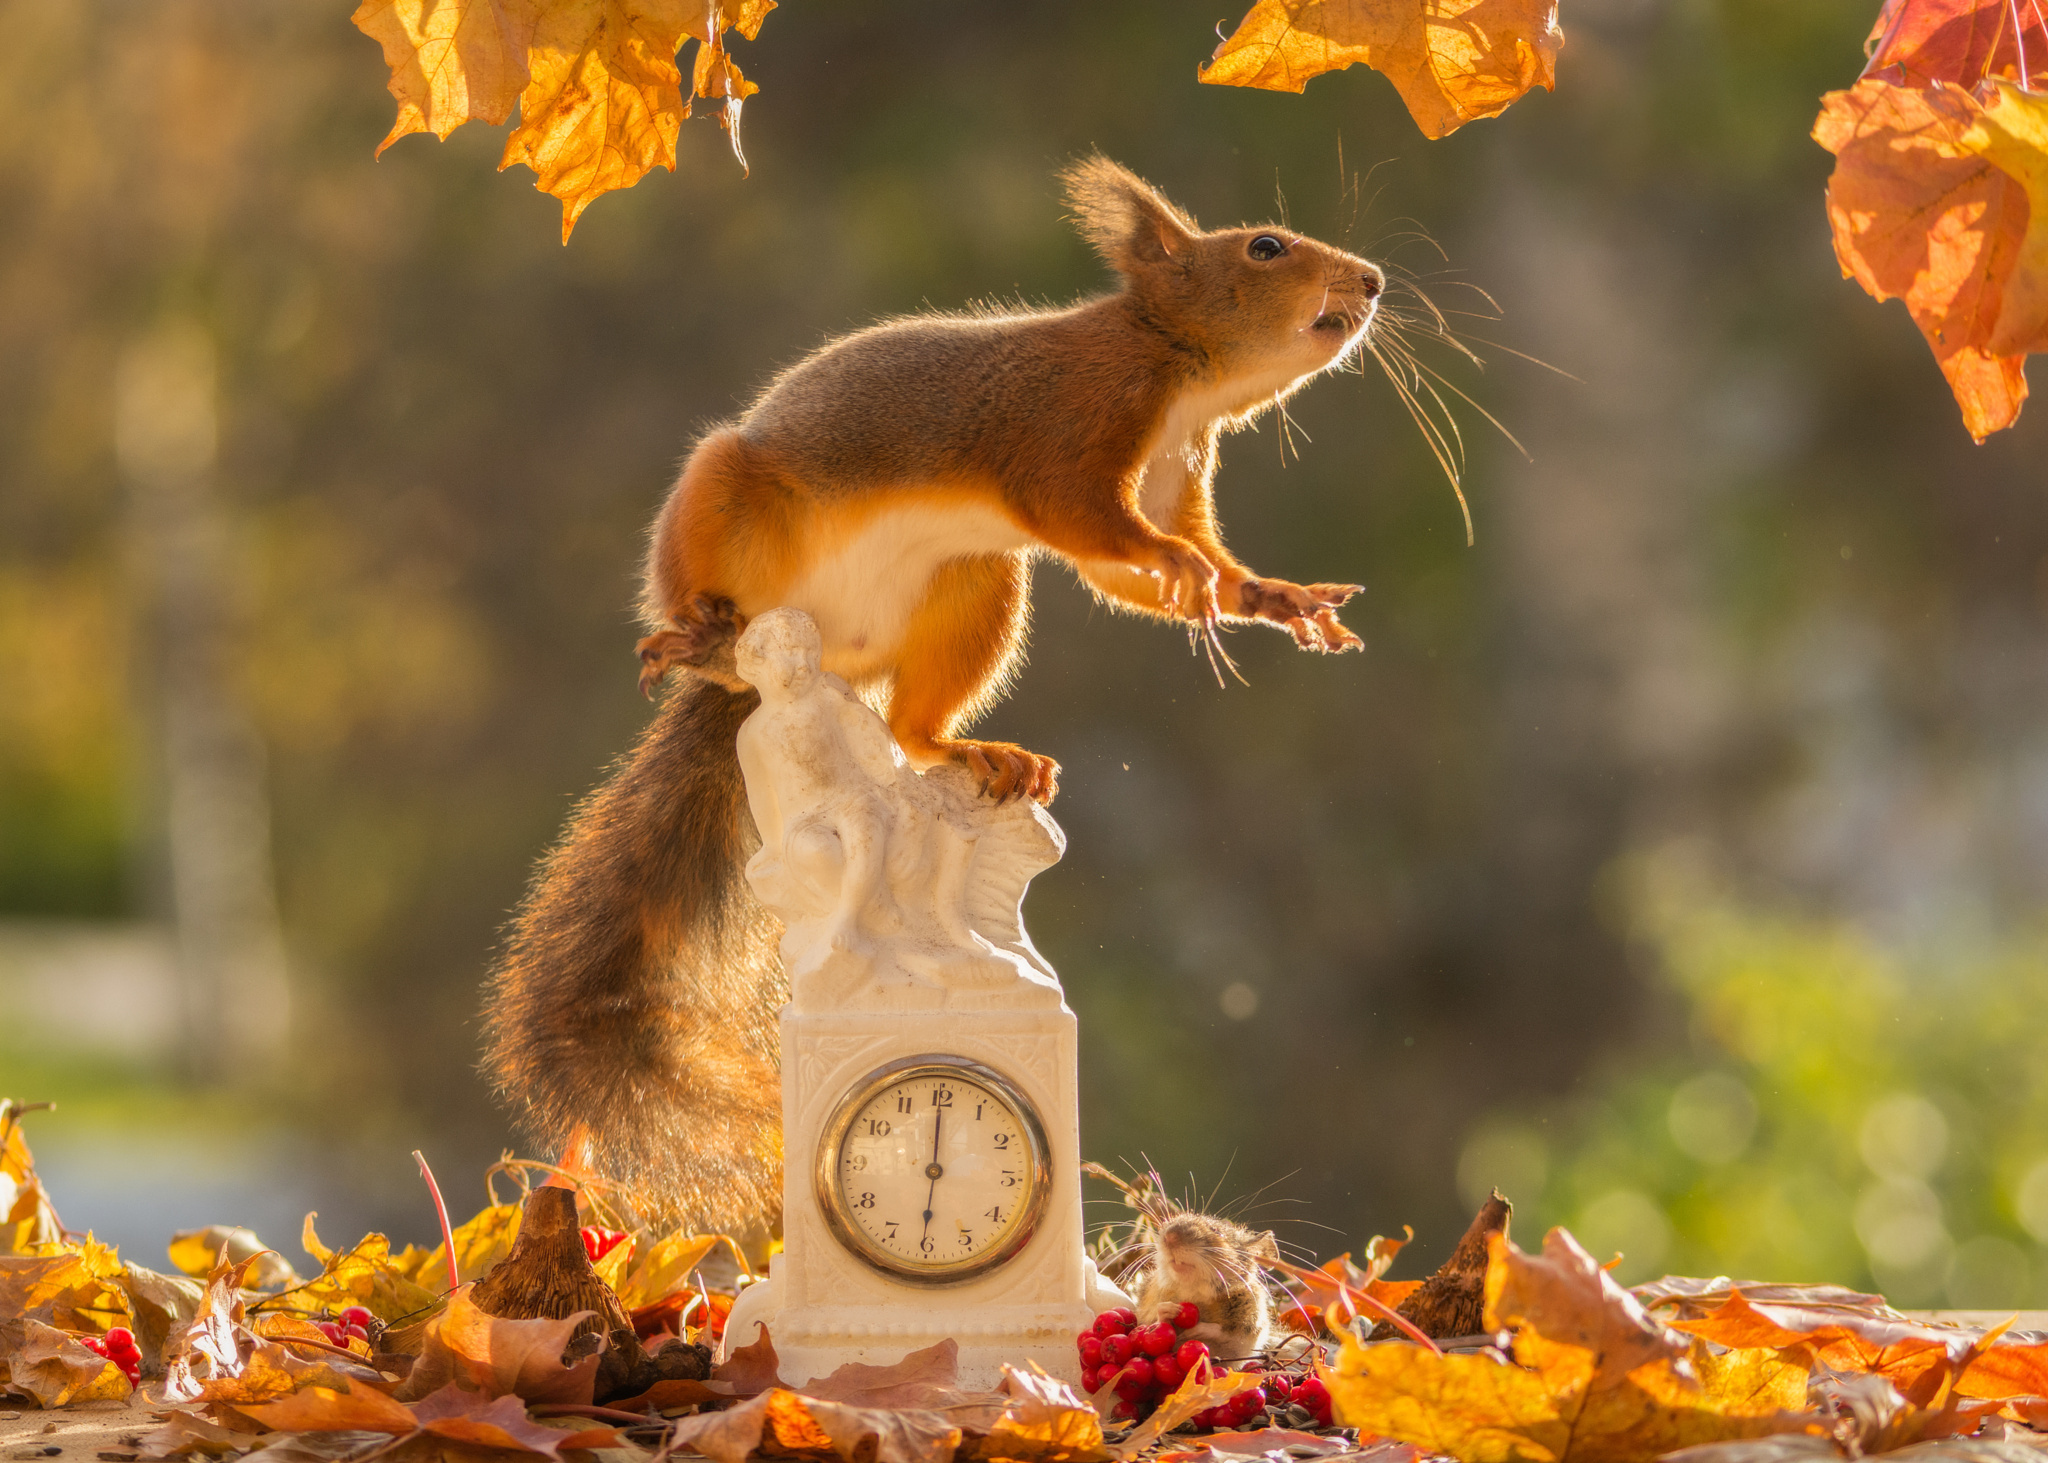 Скачать обои бесплатно Животные, Осень, Часы, Белка, Грызун картинка на рабочий стол ПК